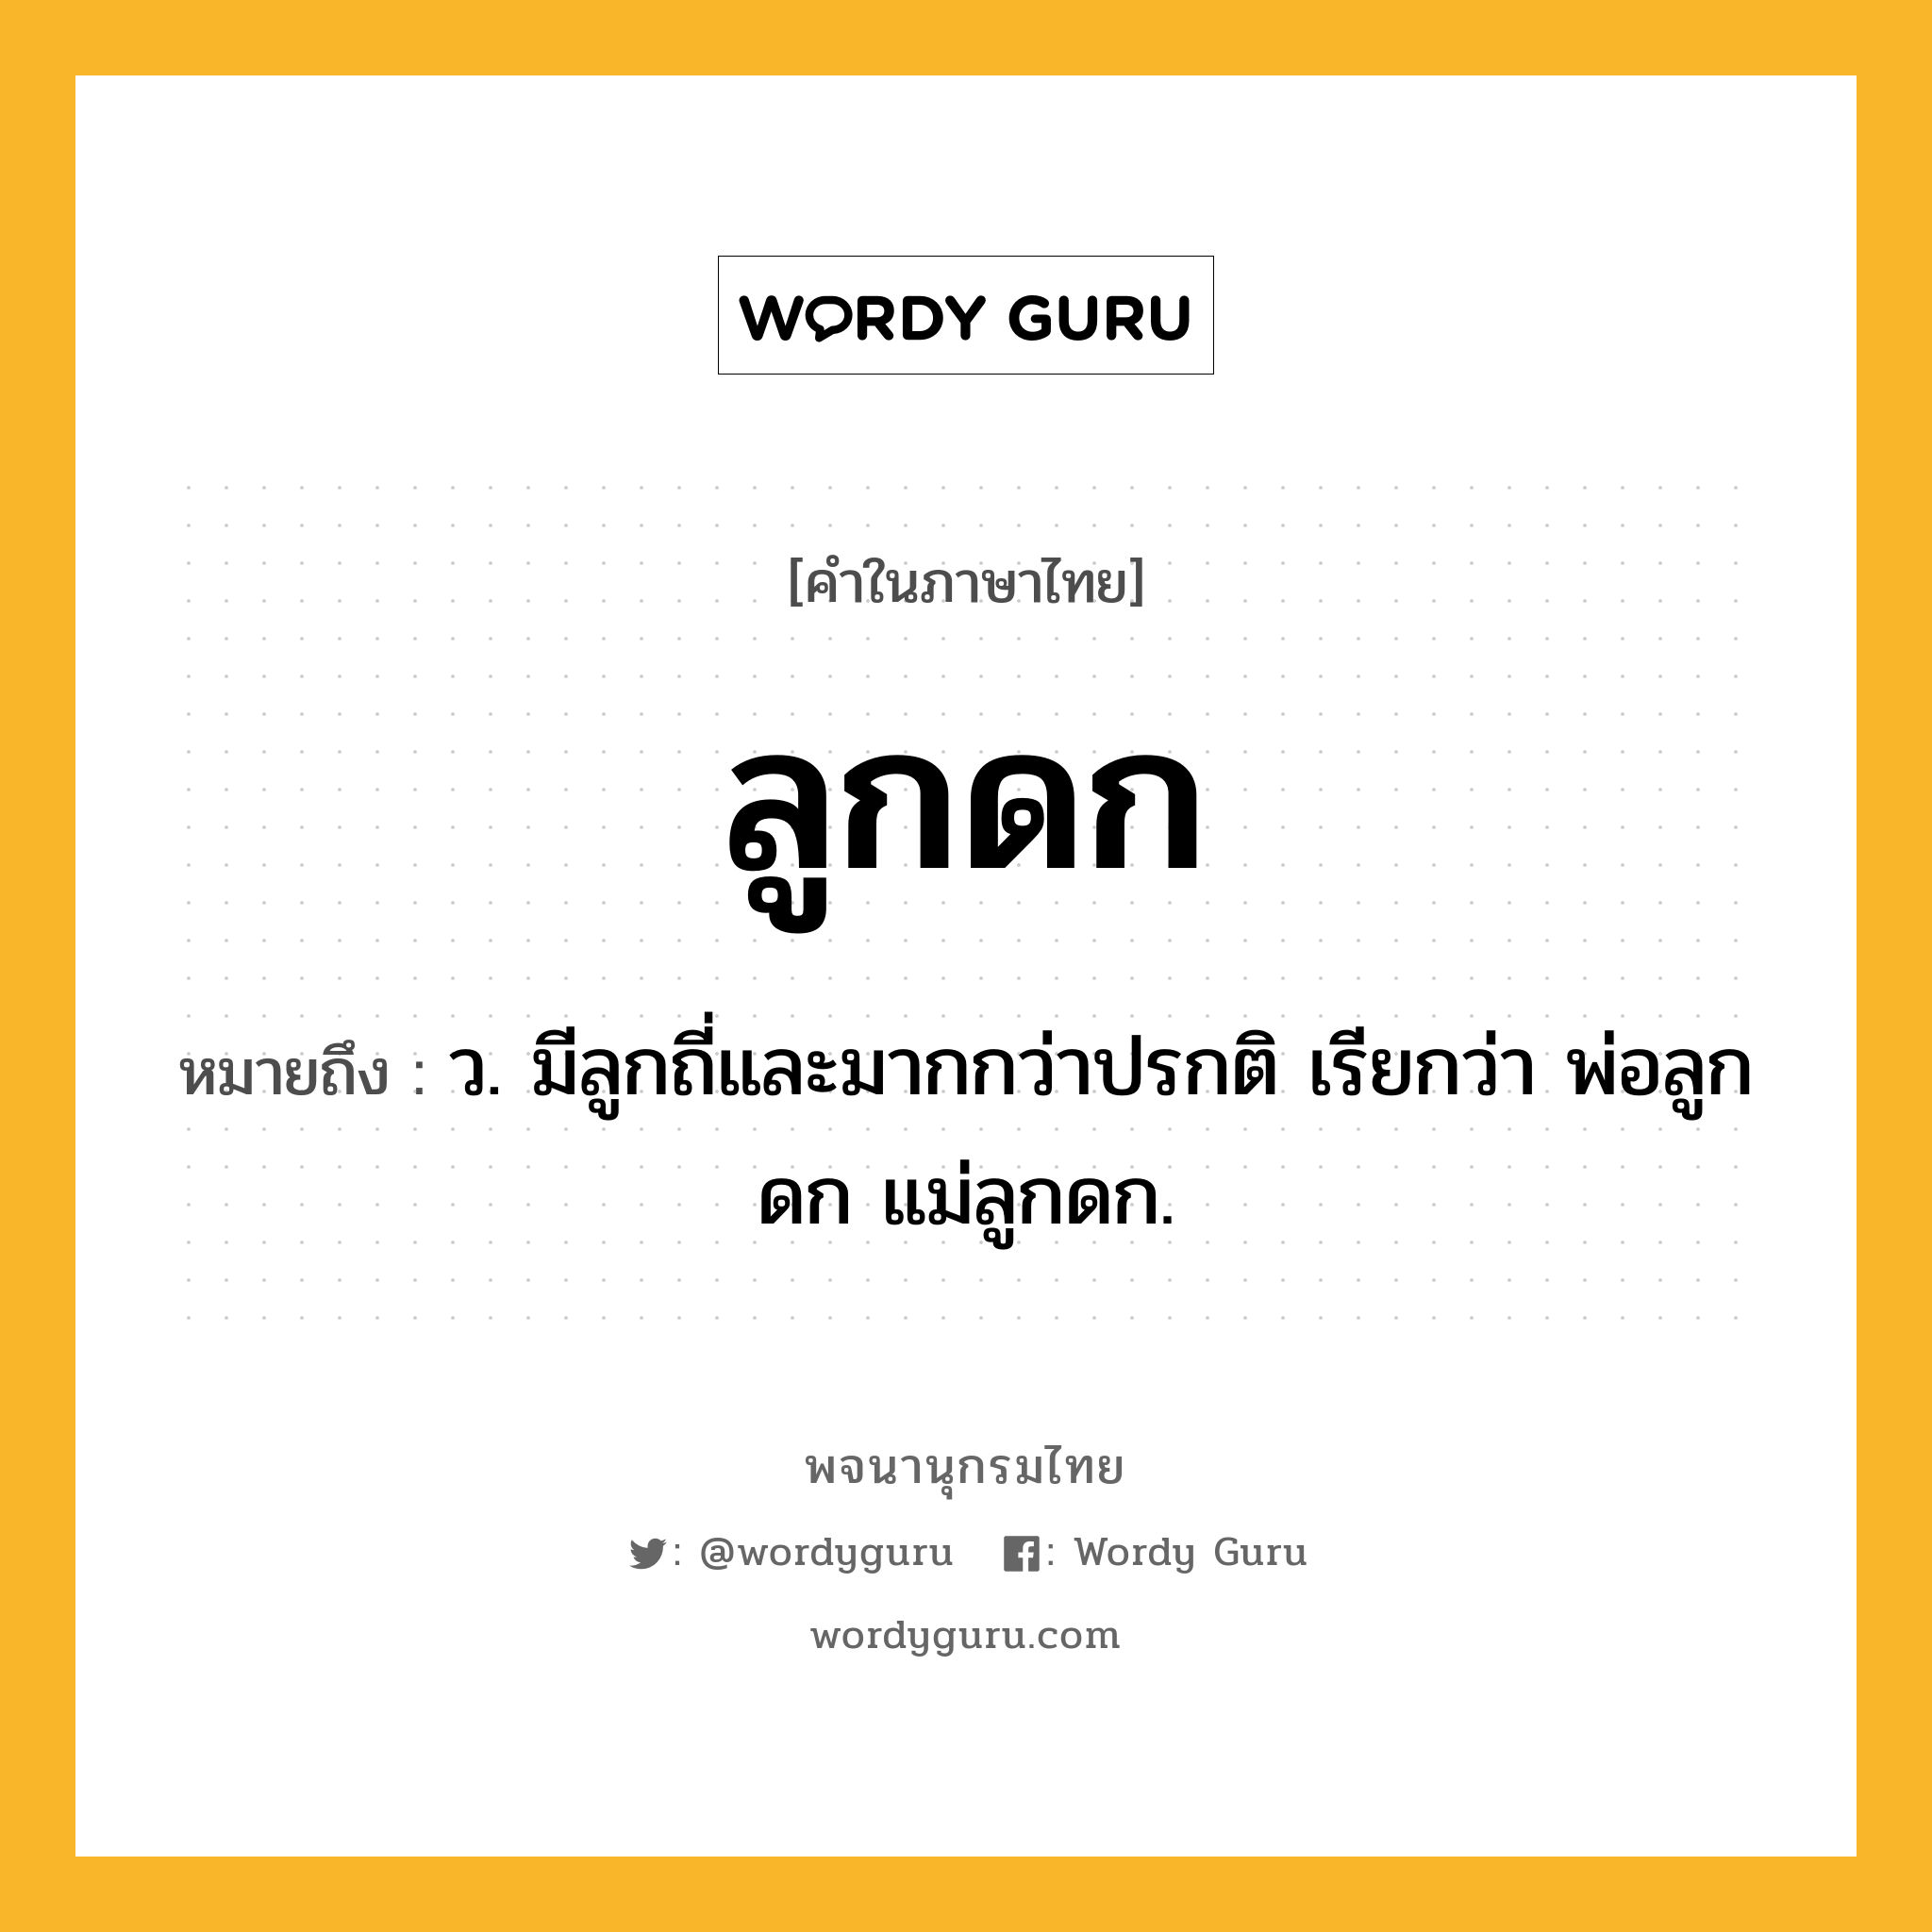 ลูกดก ความหมาย หมายถึงอะไร?, คำในภาษาไทย ลูกดก หมายถึง ว. มีลูกถี่และมากกว่าปรกติ เรียกว่า พ่อลูกดก แม่ลูกดก.